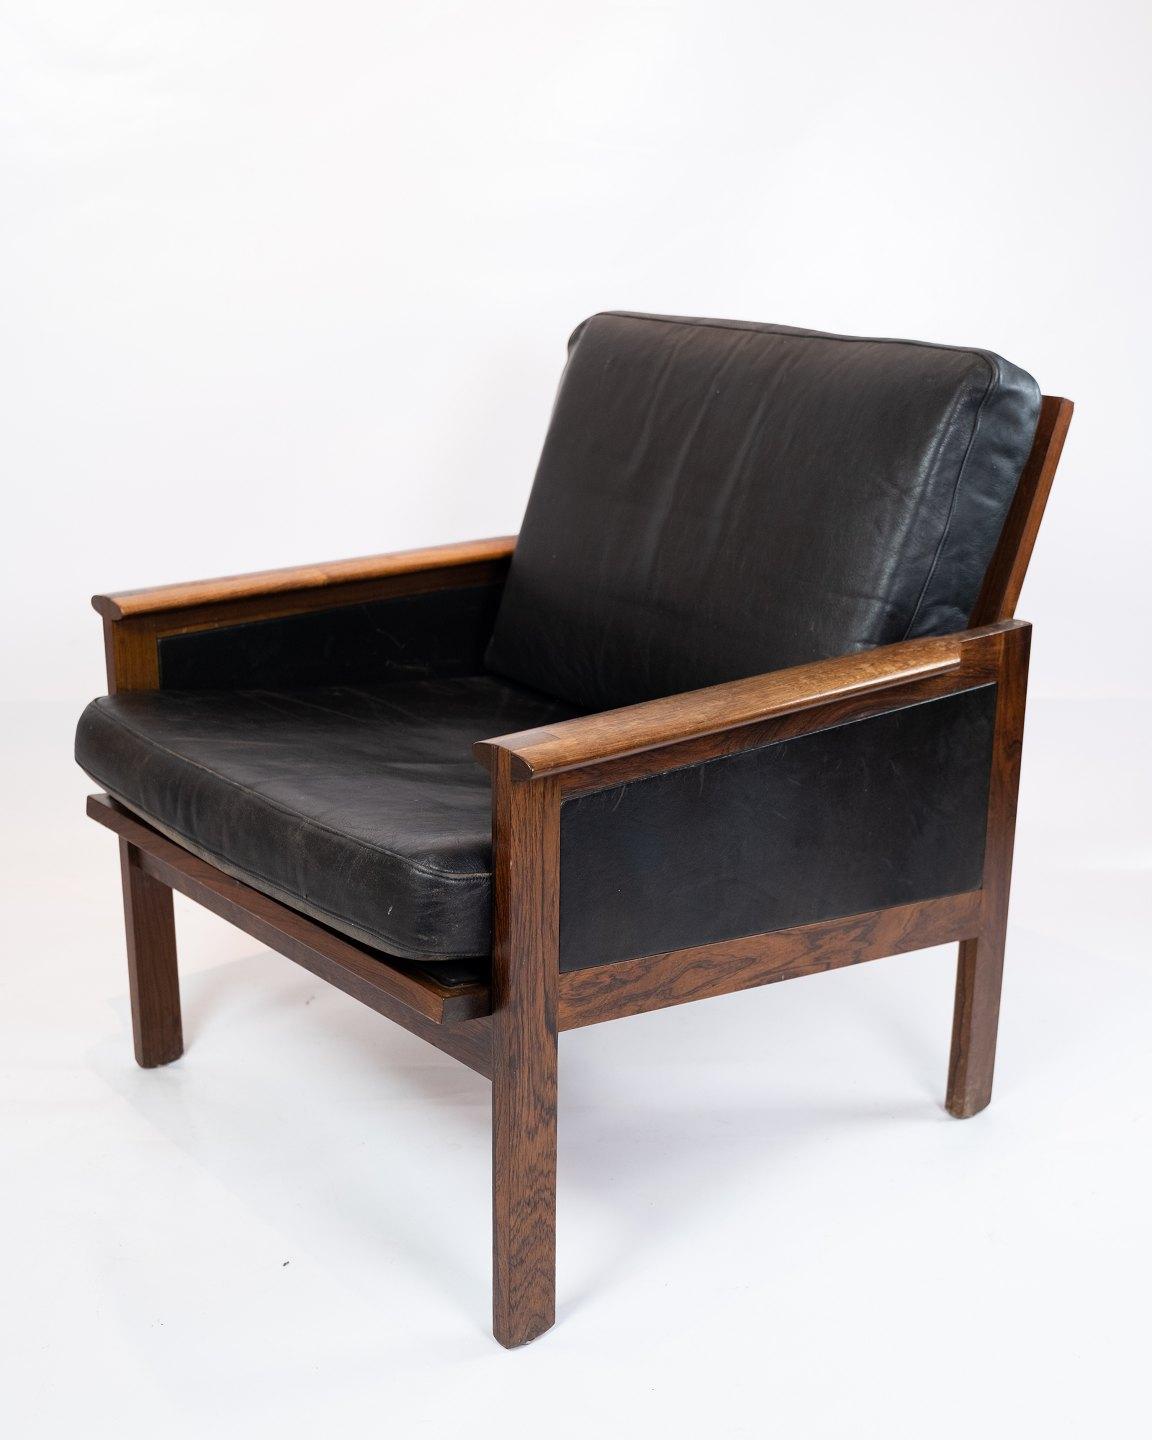 Une paire de fauteuils, modèle Capella, en bois de rose et cuir noir élégant, conçus par Illum Wikkelsø dans les années 1960. La paire est en excellent état vintage.
  